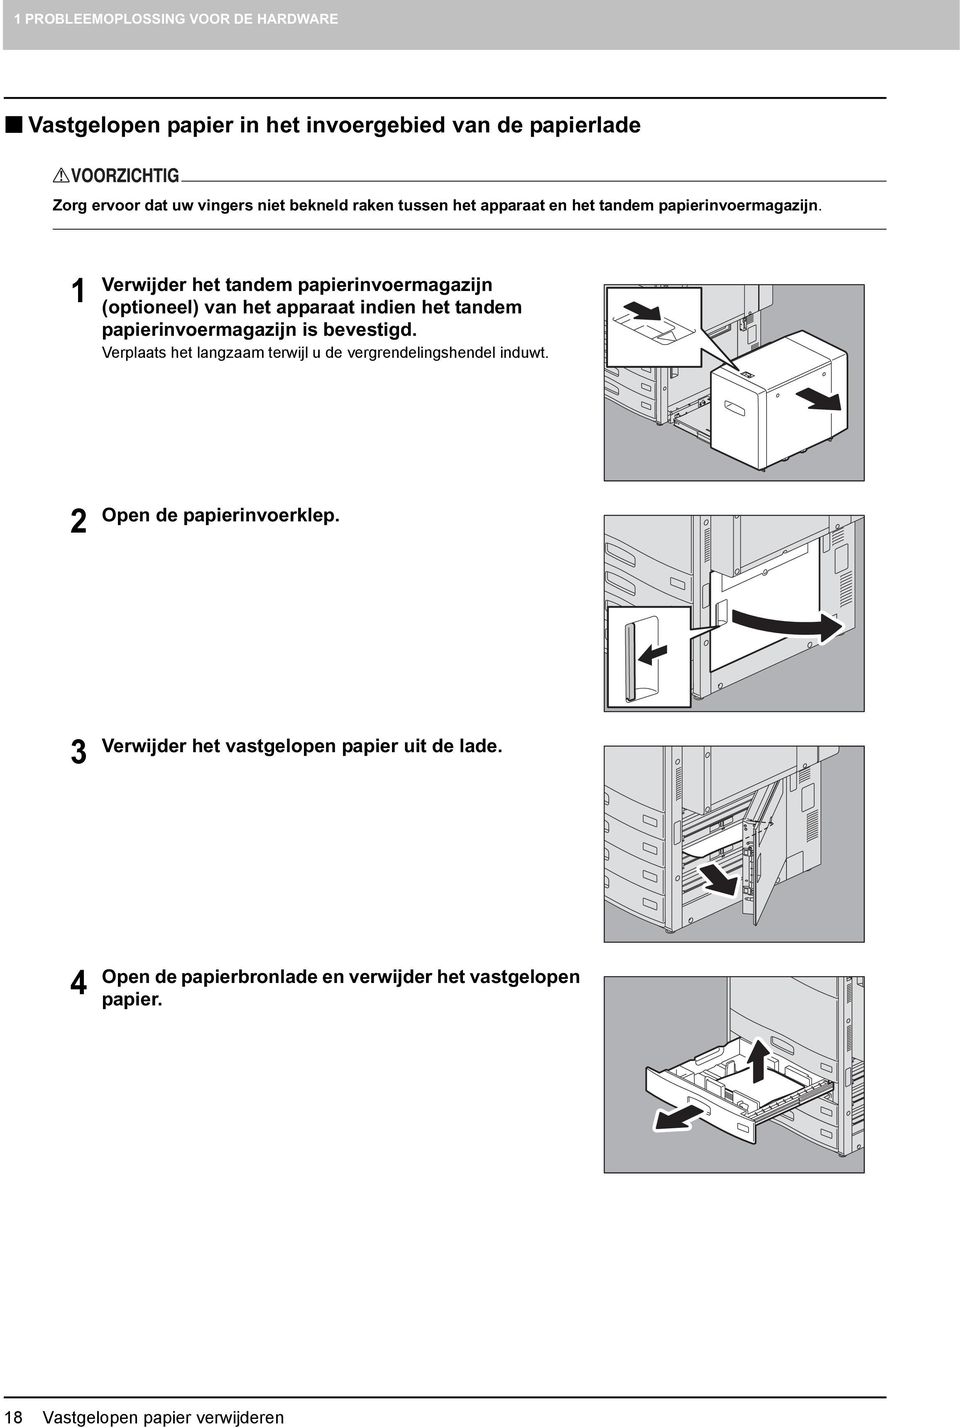 1 Verwijder het tandem papierinvoermagazijn (optioneel) van het apparaat indien het tandem papierinvoermagazijn is bevestigd.